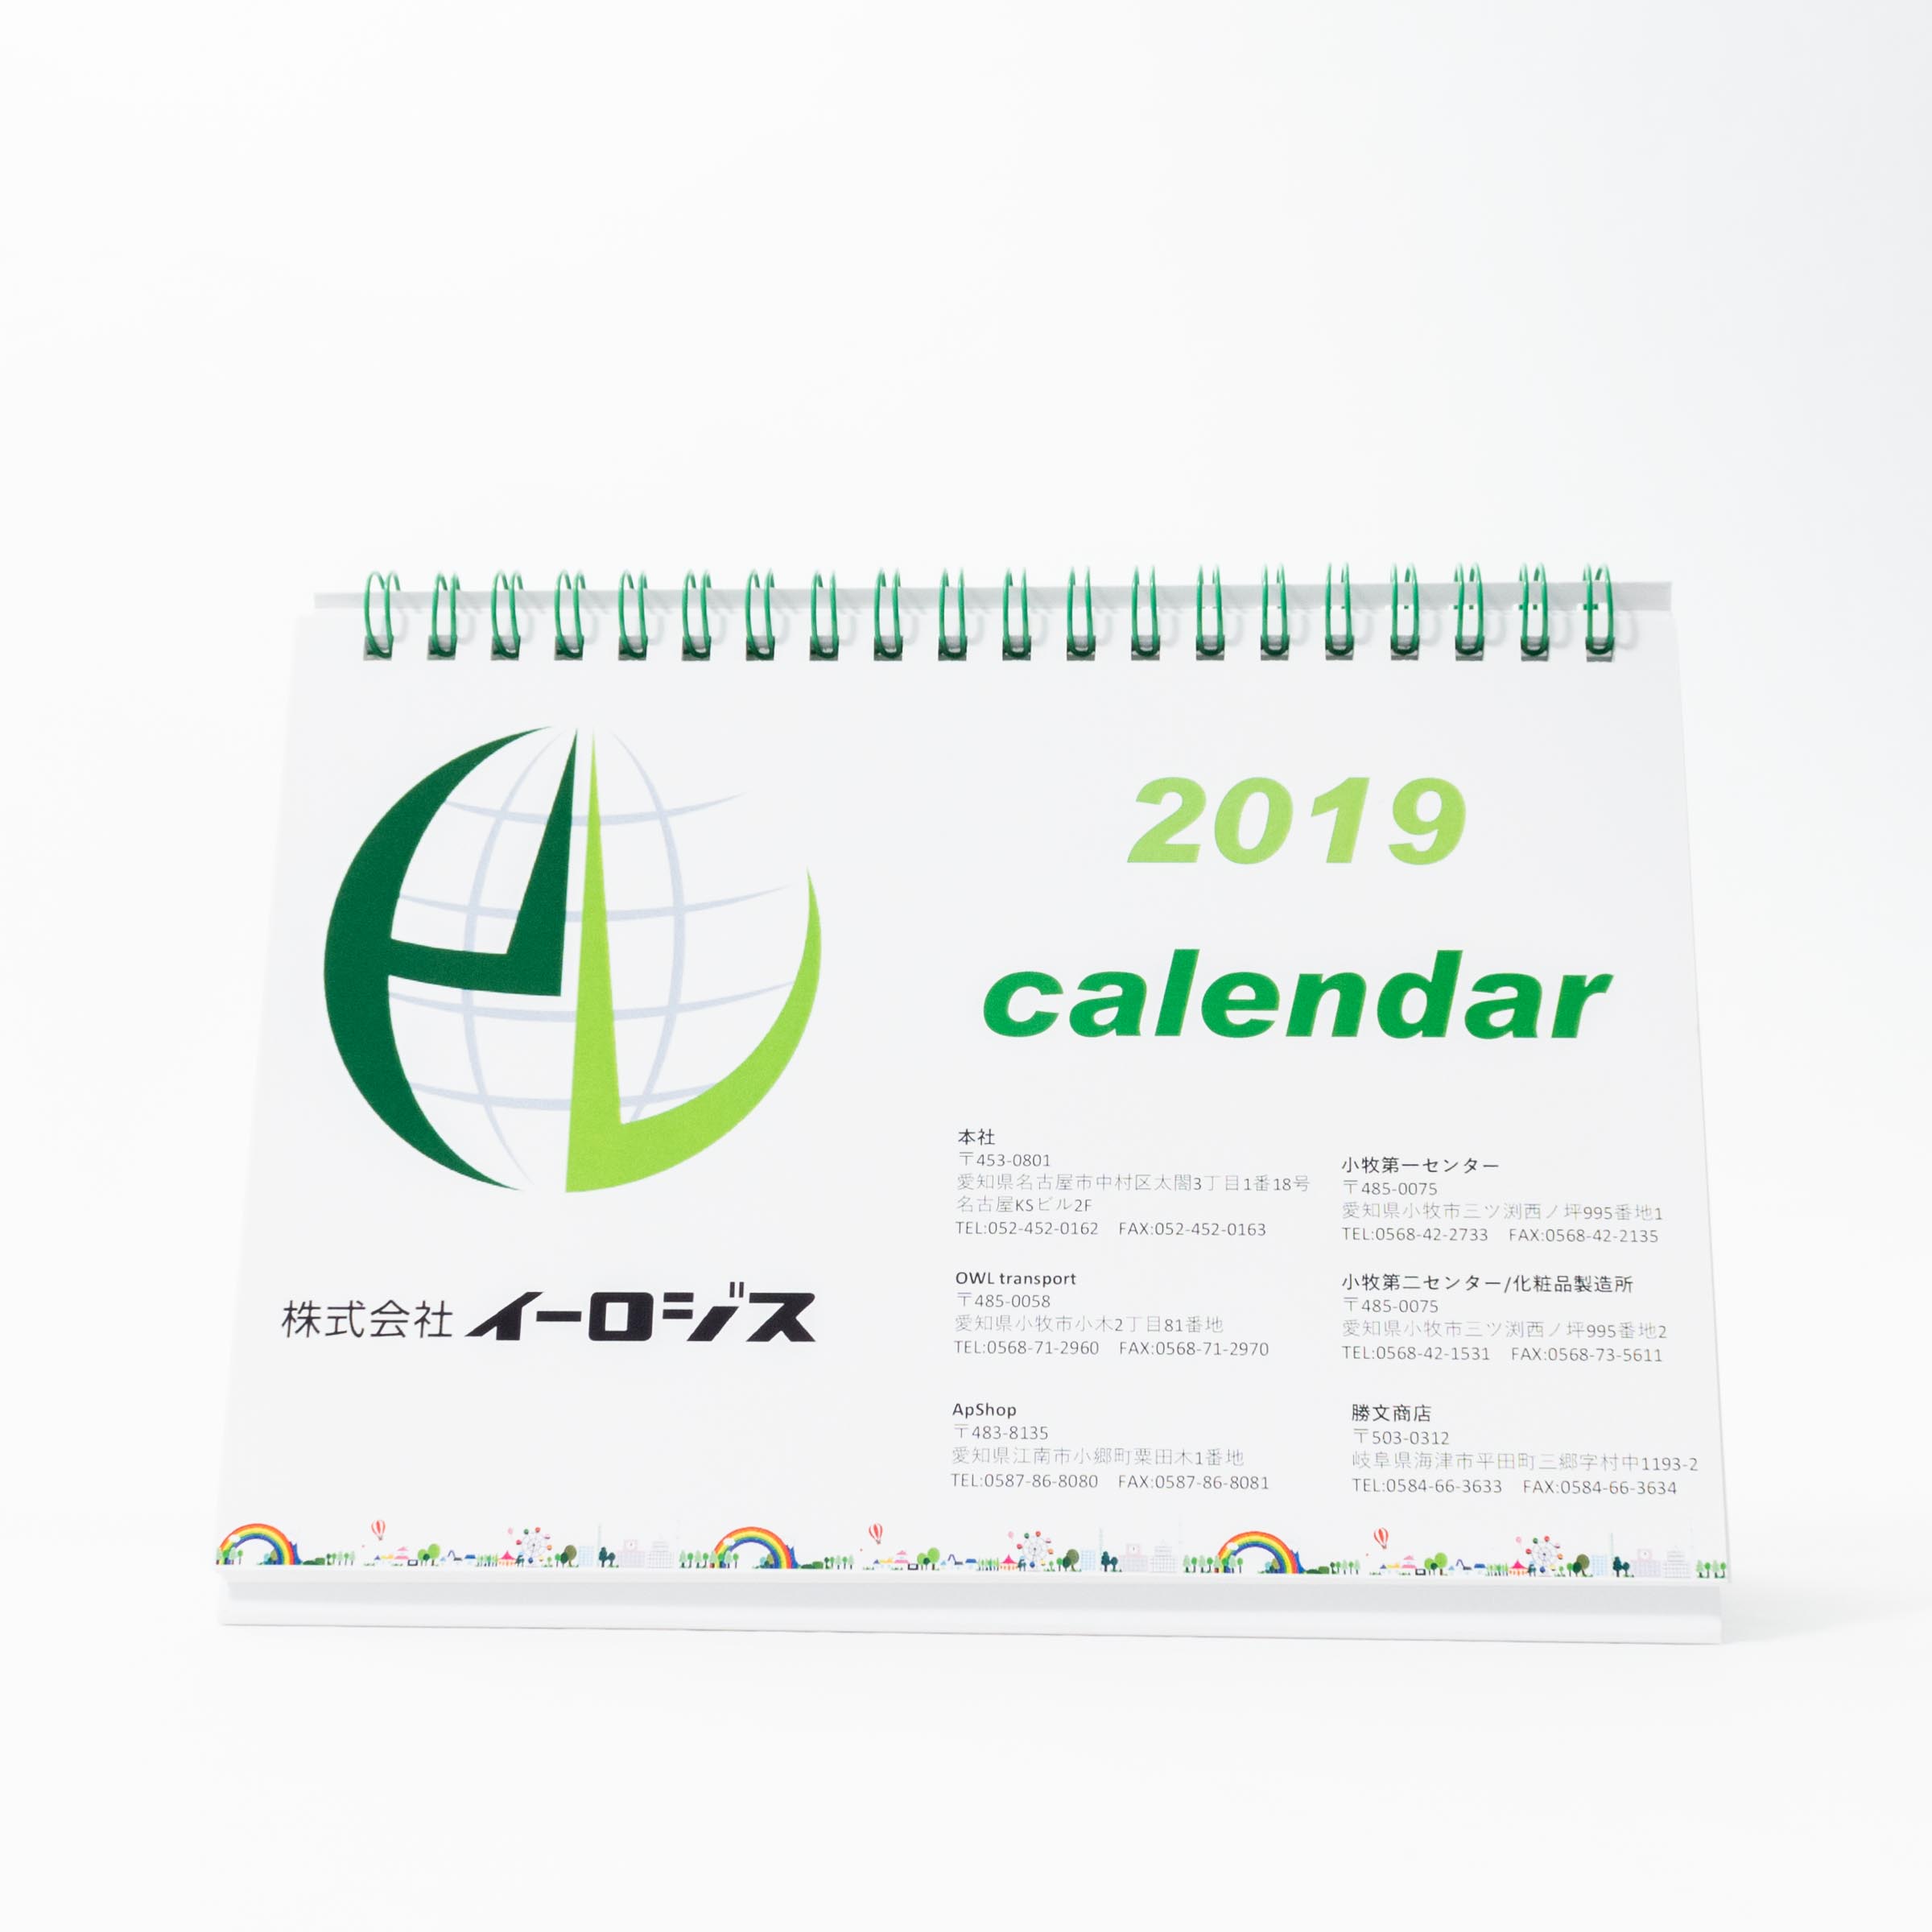 「株式会社イーロジス 様」製作のオリジナルカレンダー